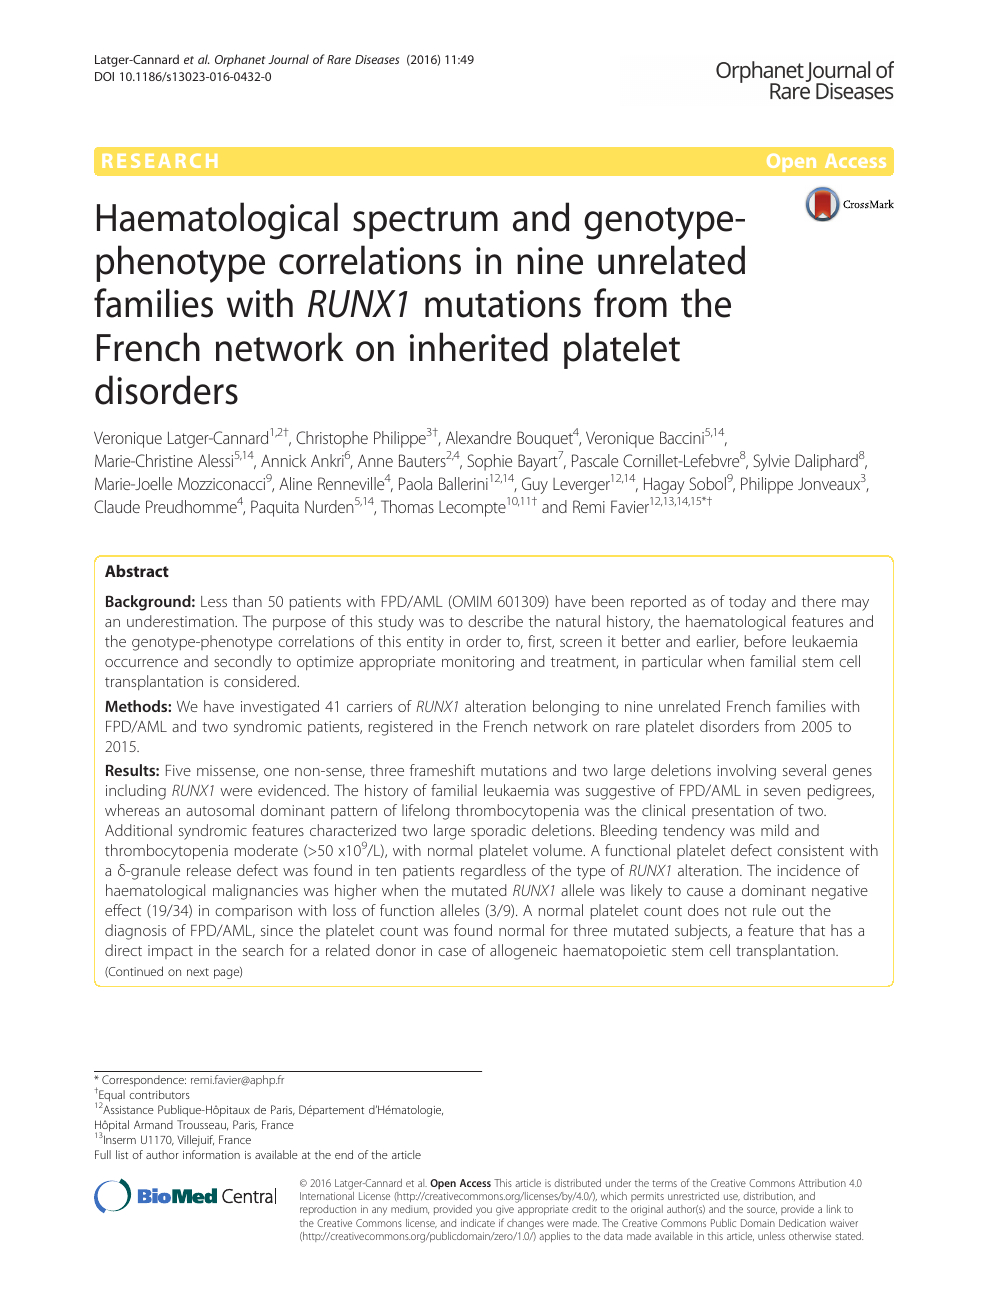 Haematological Spectrum And Genotype-Phenotype Correlations encequiconcerne Liste De Departement De France